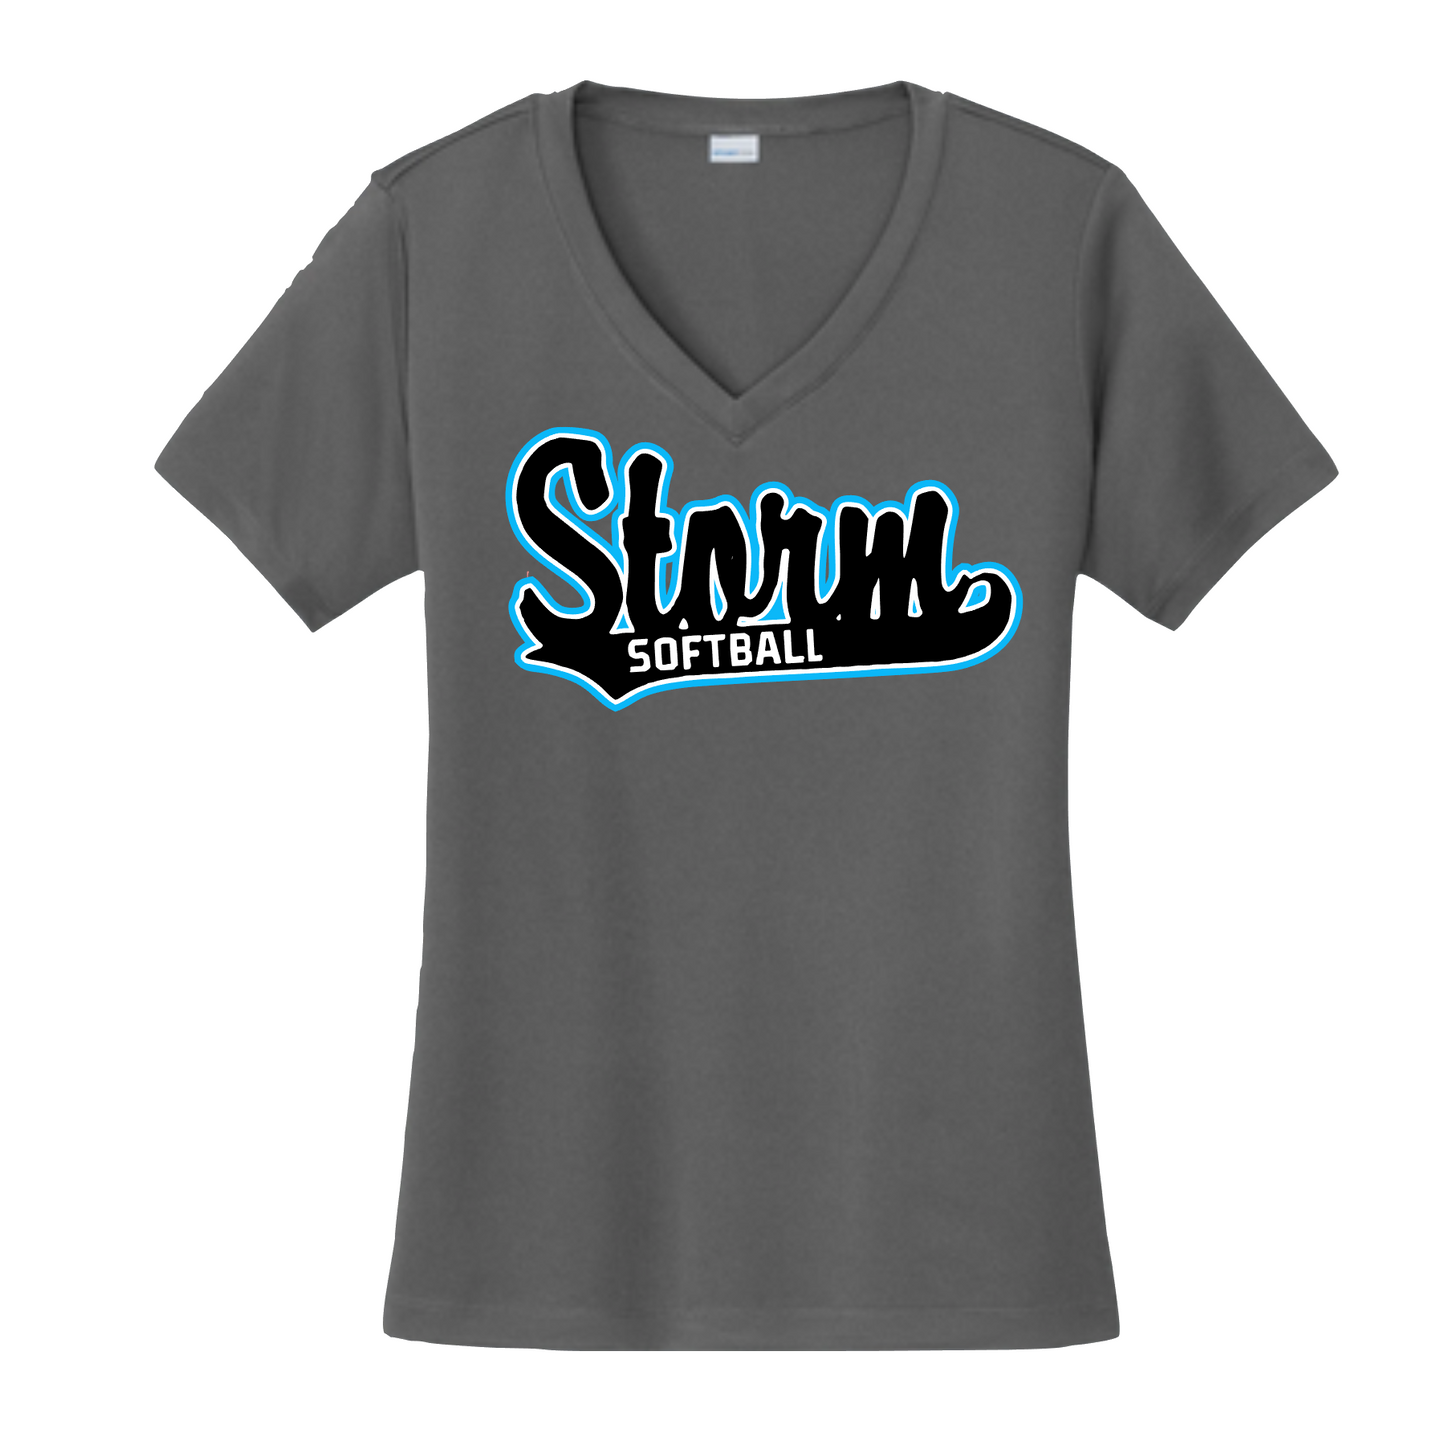 Storm Softball Tee, Graphite Storm Softball Shirt, Storm Grey Tshirt